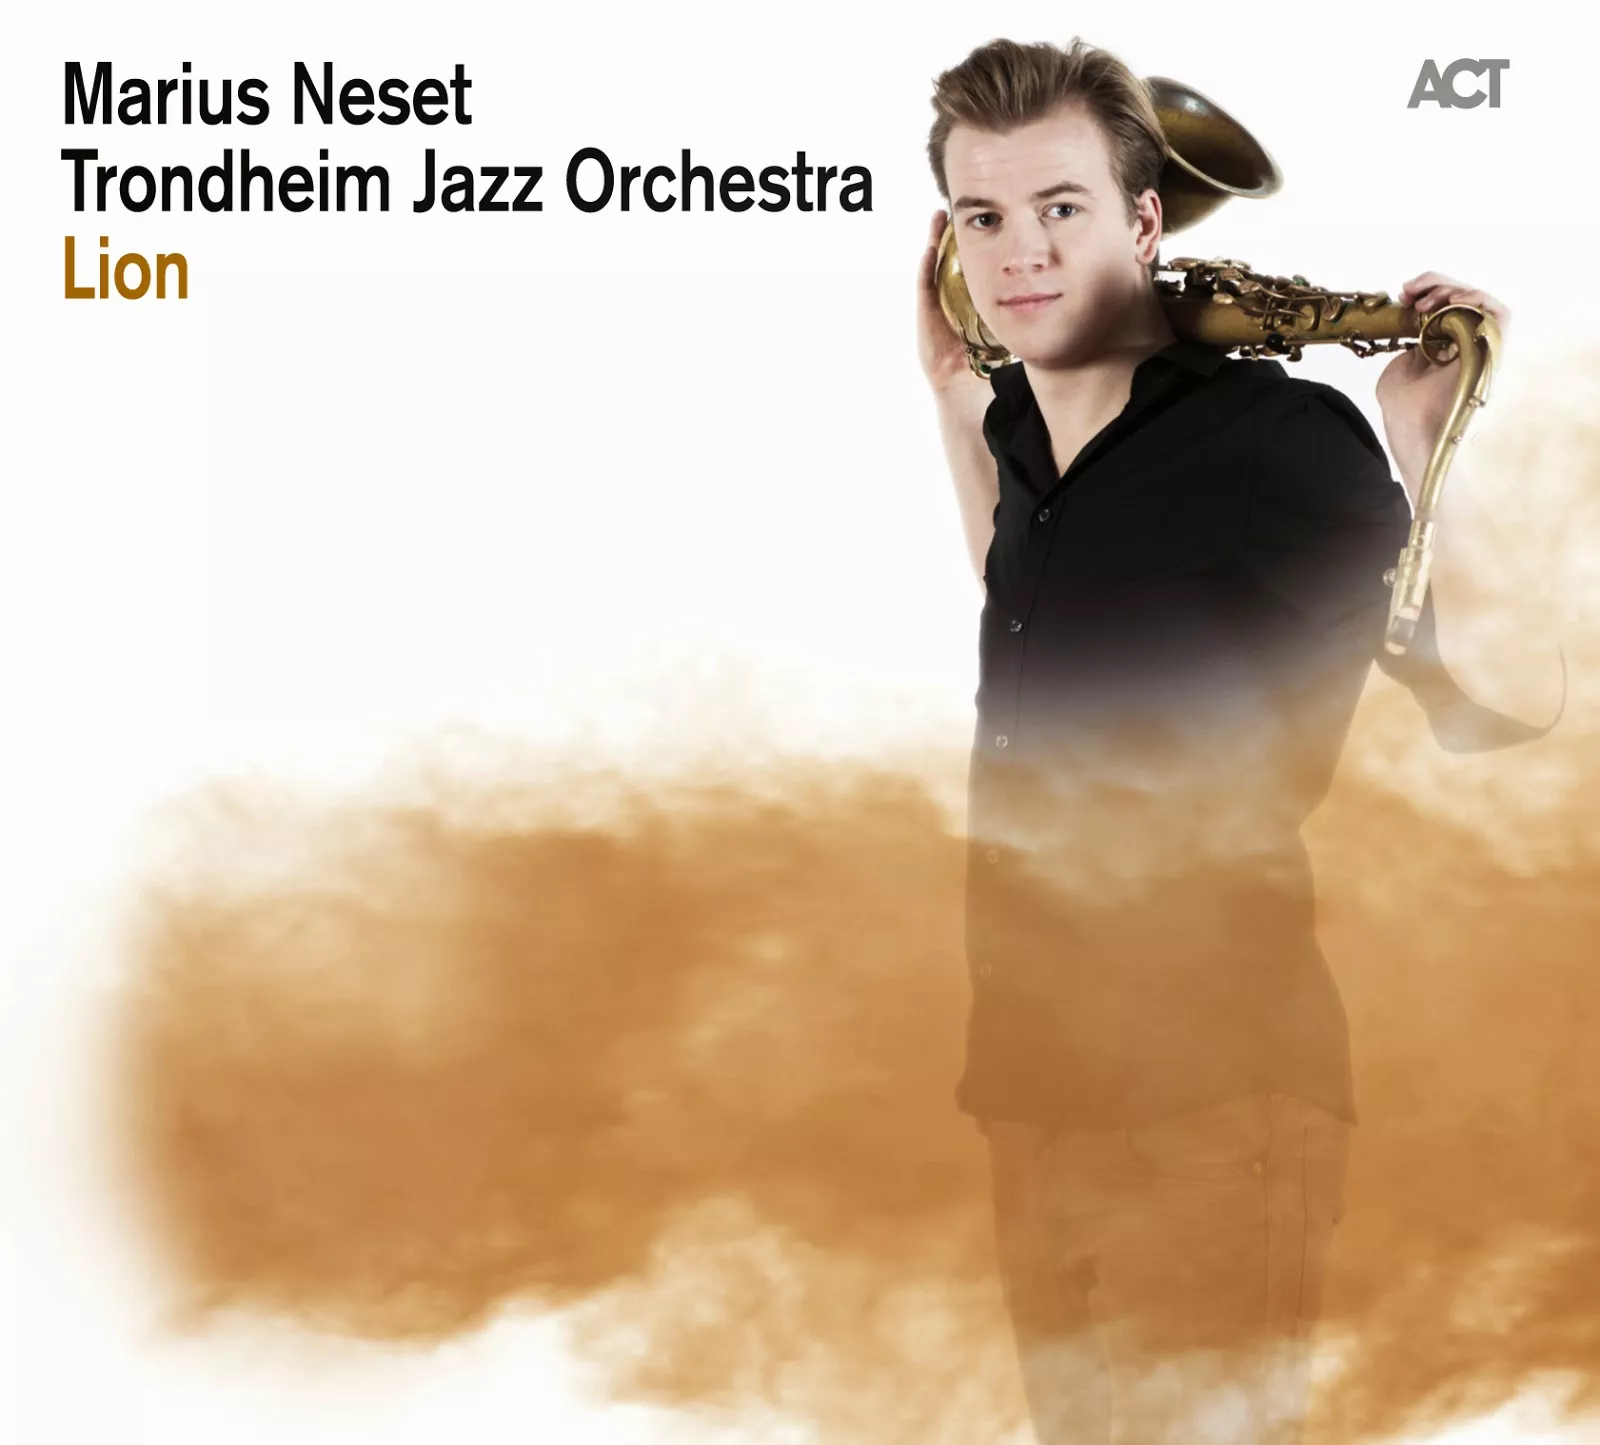 Lion - Marius Neset & Trondheim Jazz Orchestra